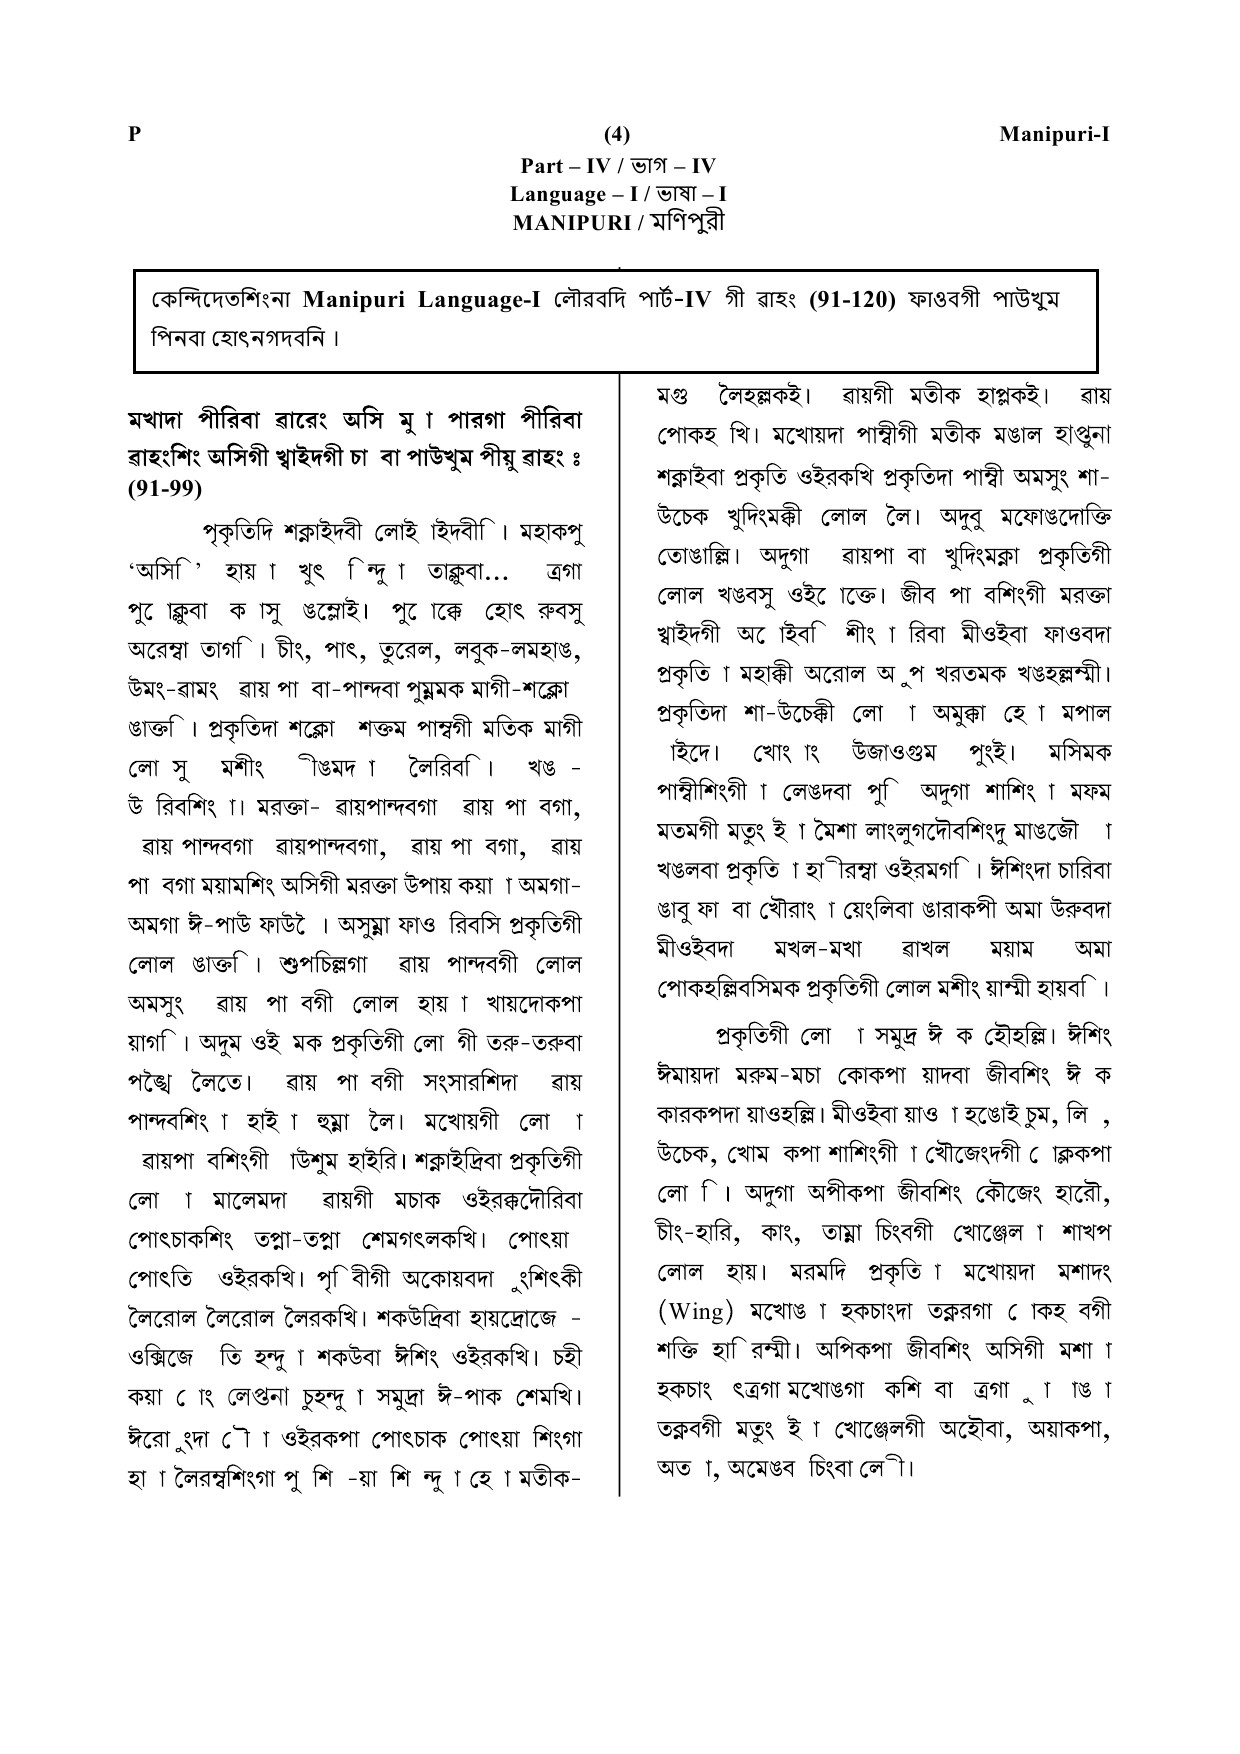 CTET July 2019 Paper 1 Part IV Language 1 Manipuri 1